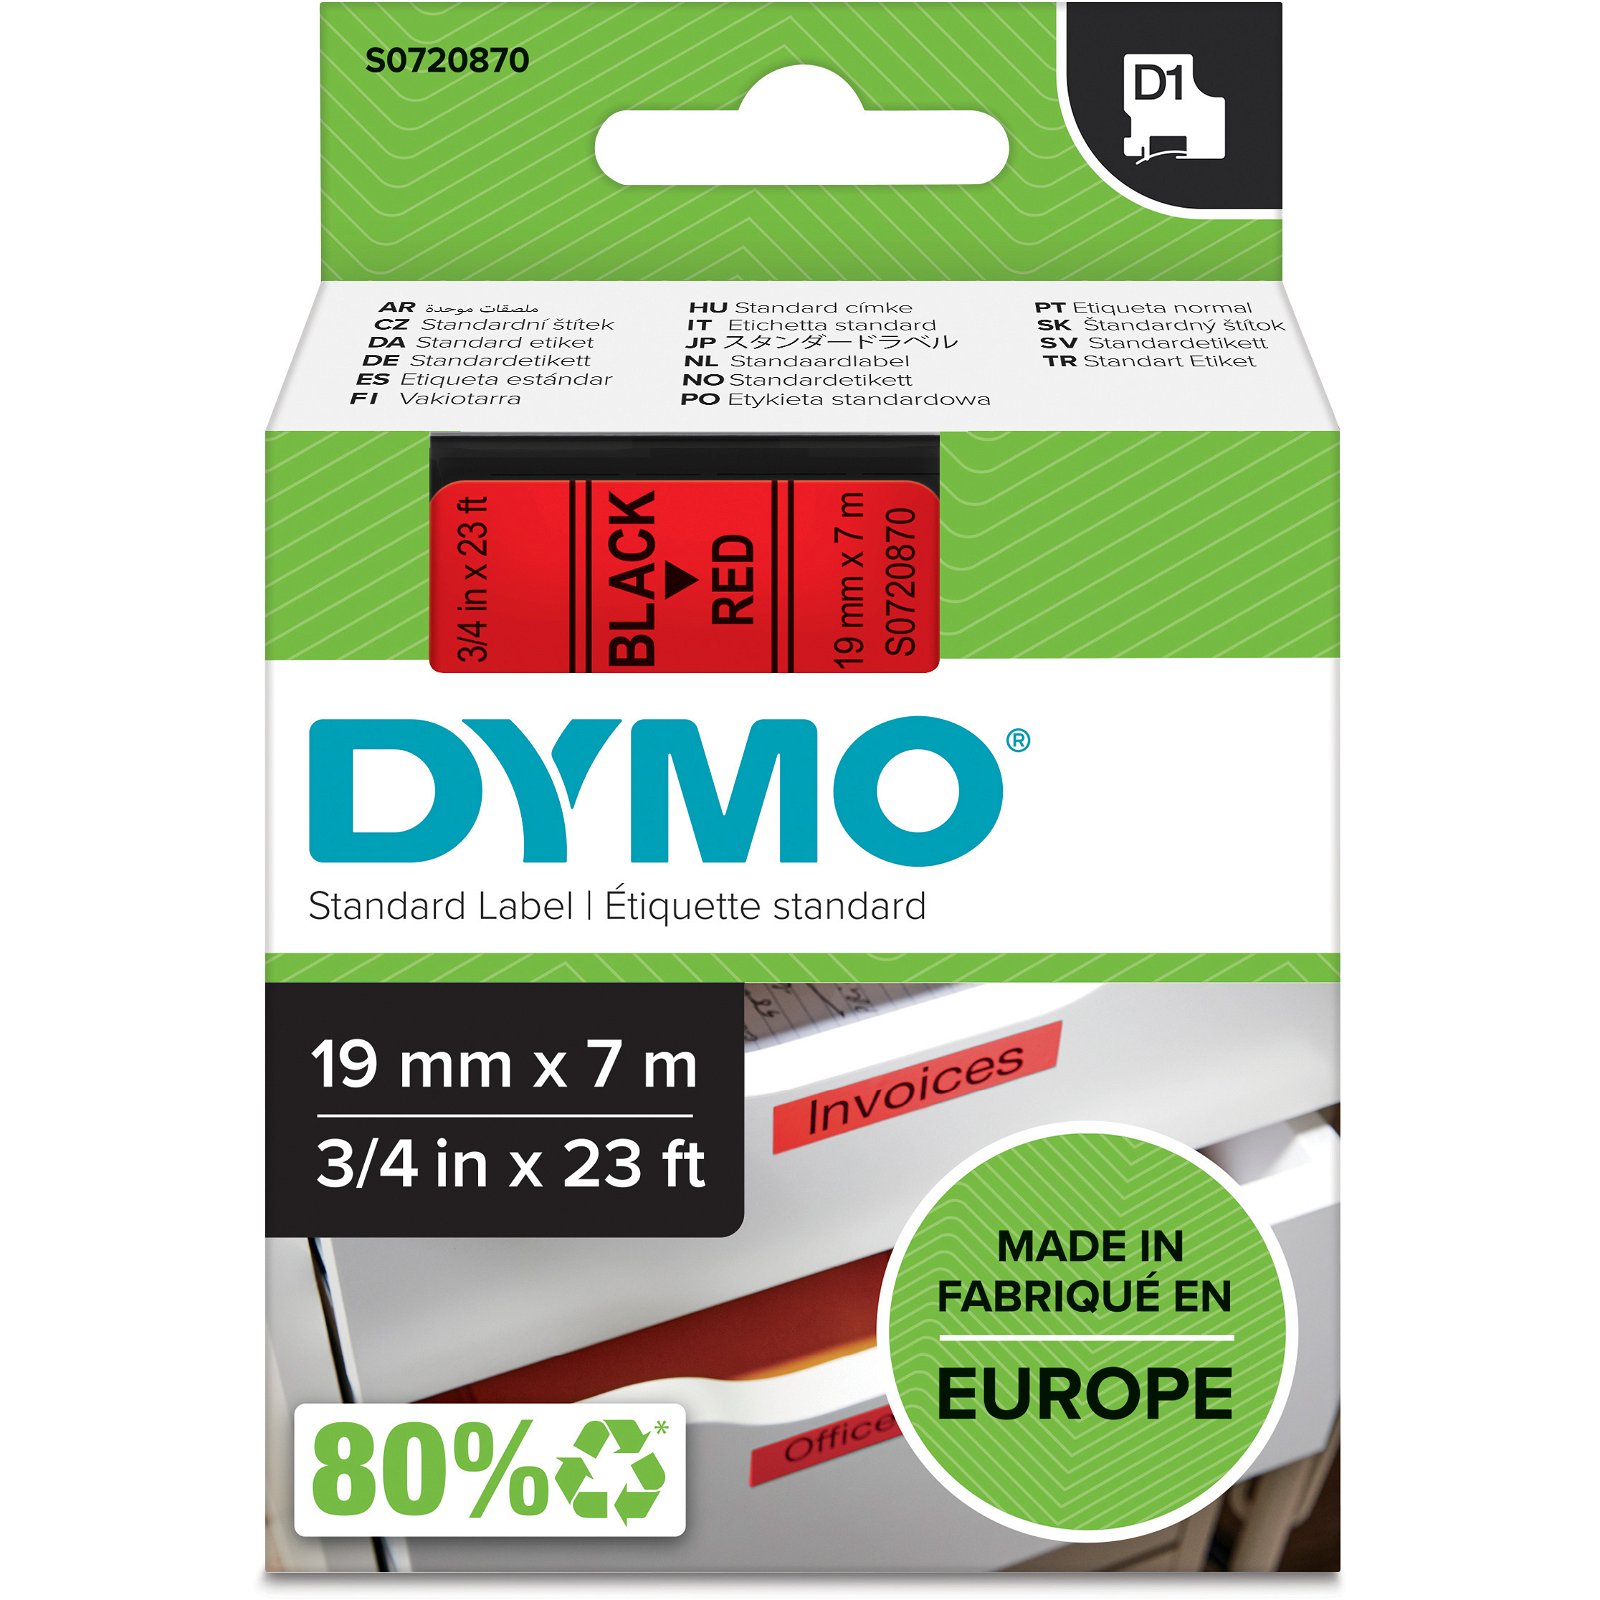 Dymo D1 standard tapekasette 19 mm sort;rod Polyester